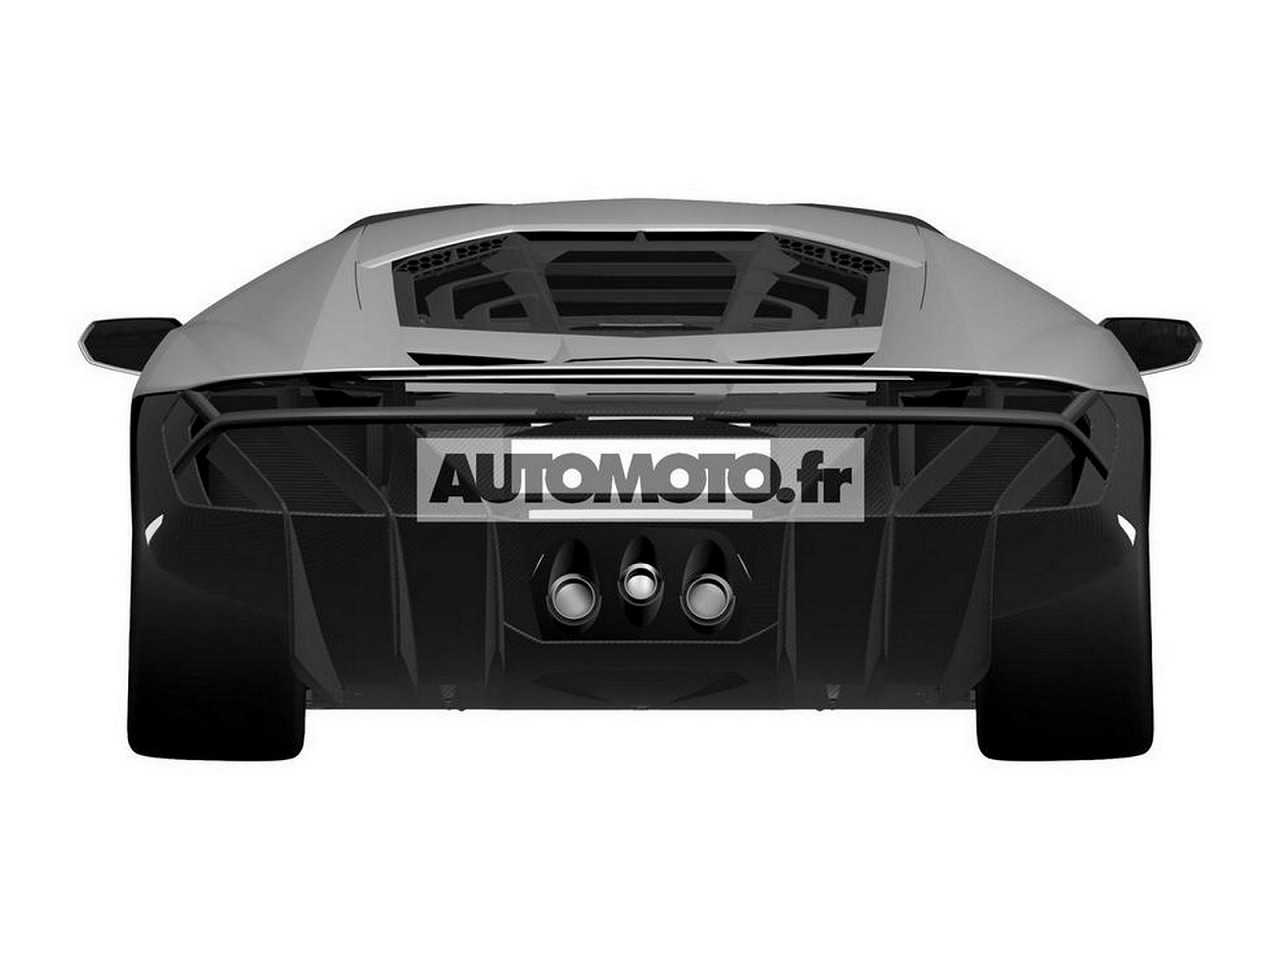 LamborghiniCentenario 2017 - traseira